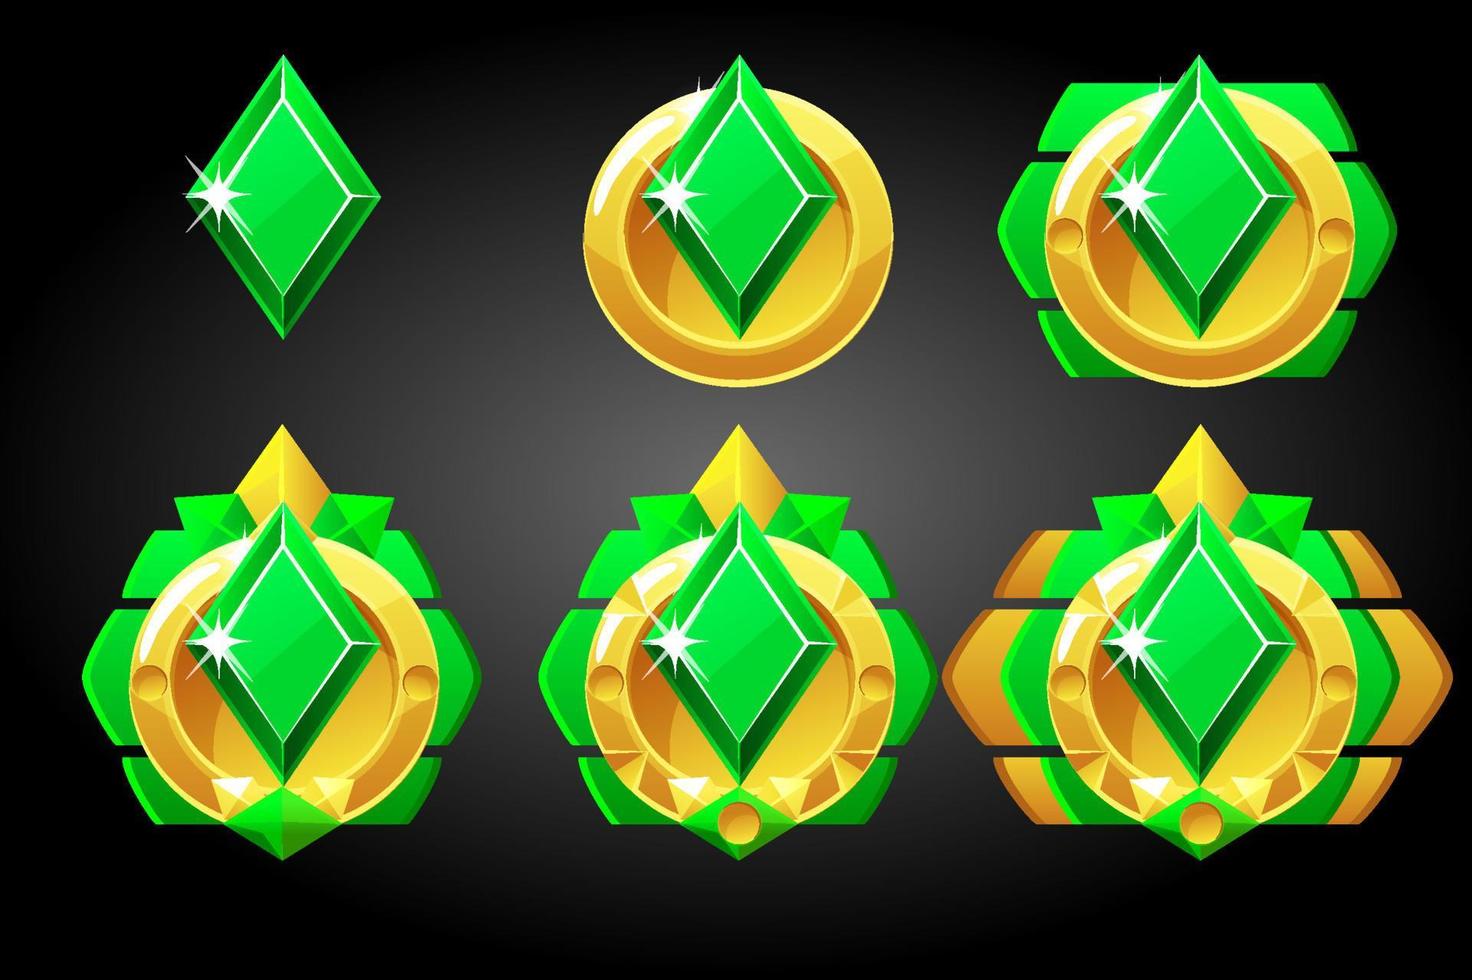 vecteur série de diamants symboles de cartes à jouer poker. prix des icônes, classement des badges dans le jeu.